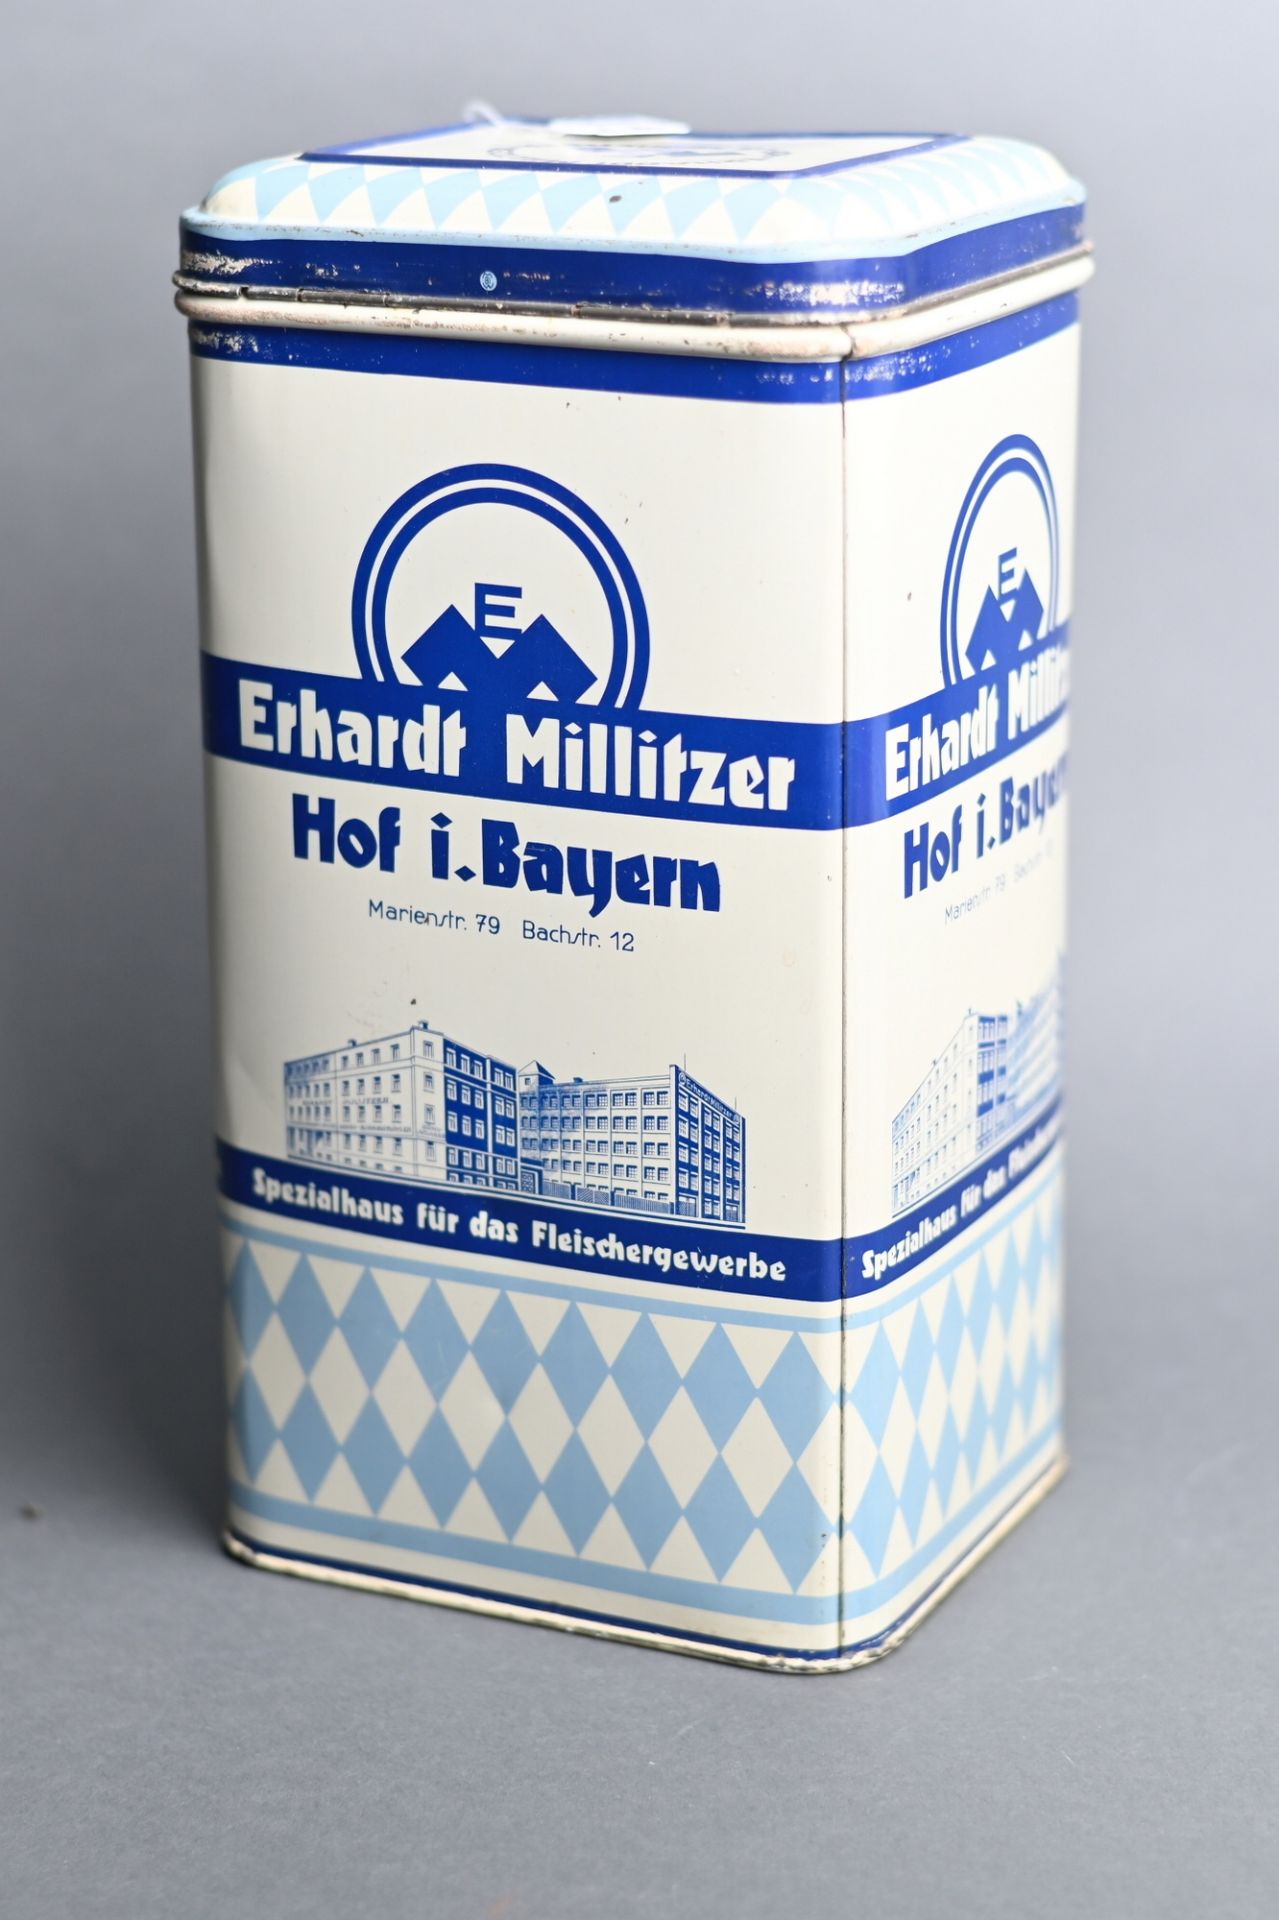 Große Blechdose Erhardt Millitzer Hof i. Bayern, Spezialhaus für das Fleischgewerbe, kleine